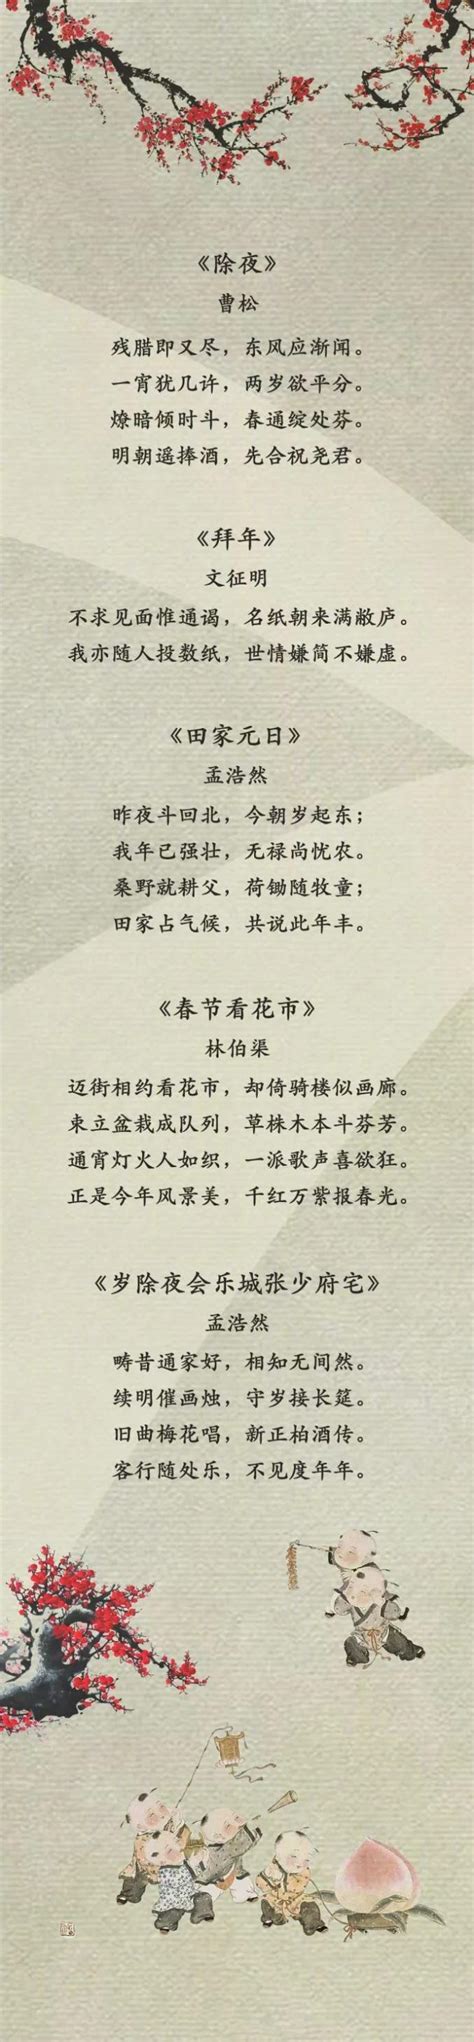 中国的好诗词